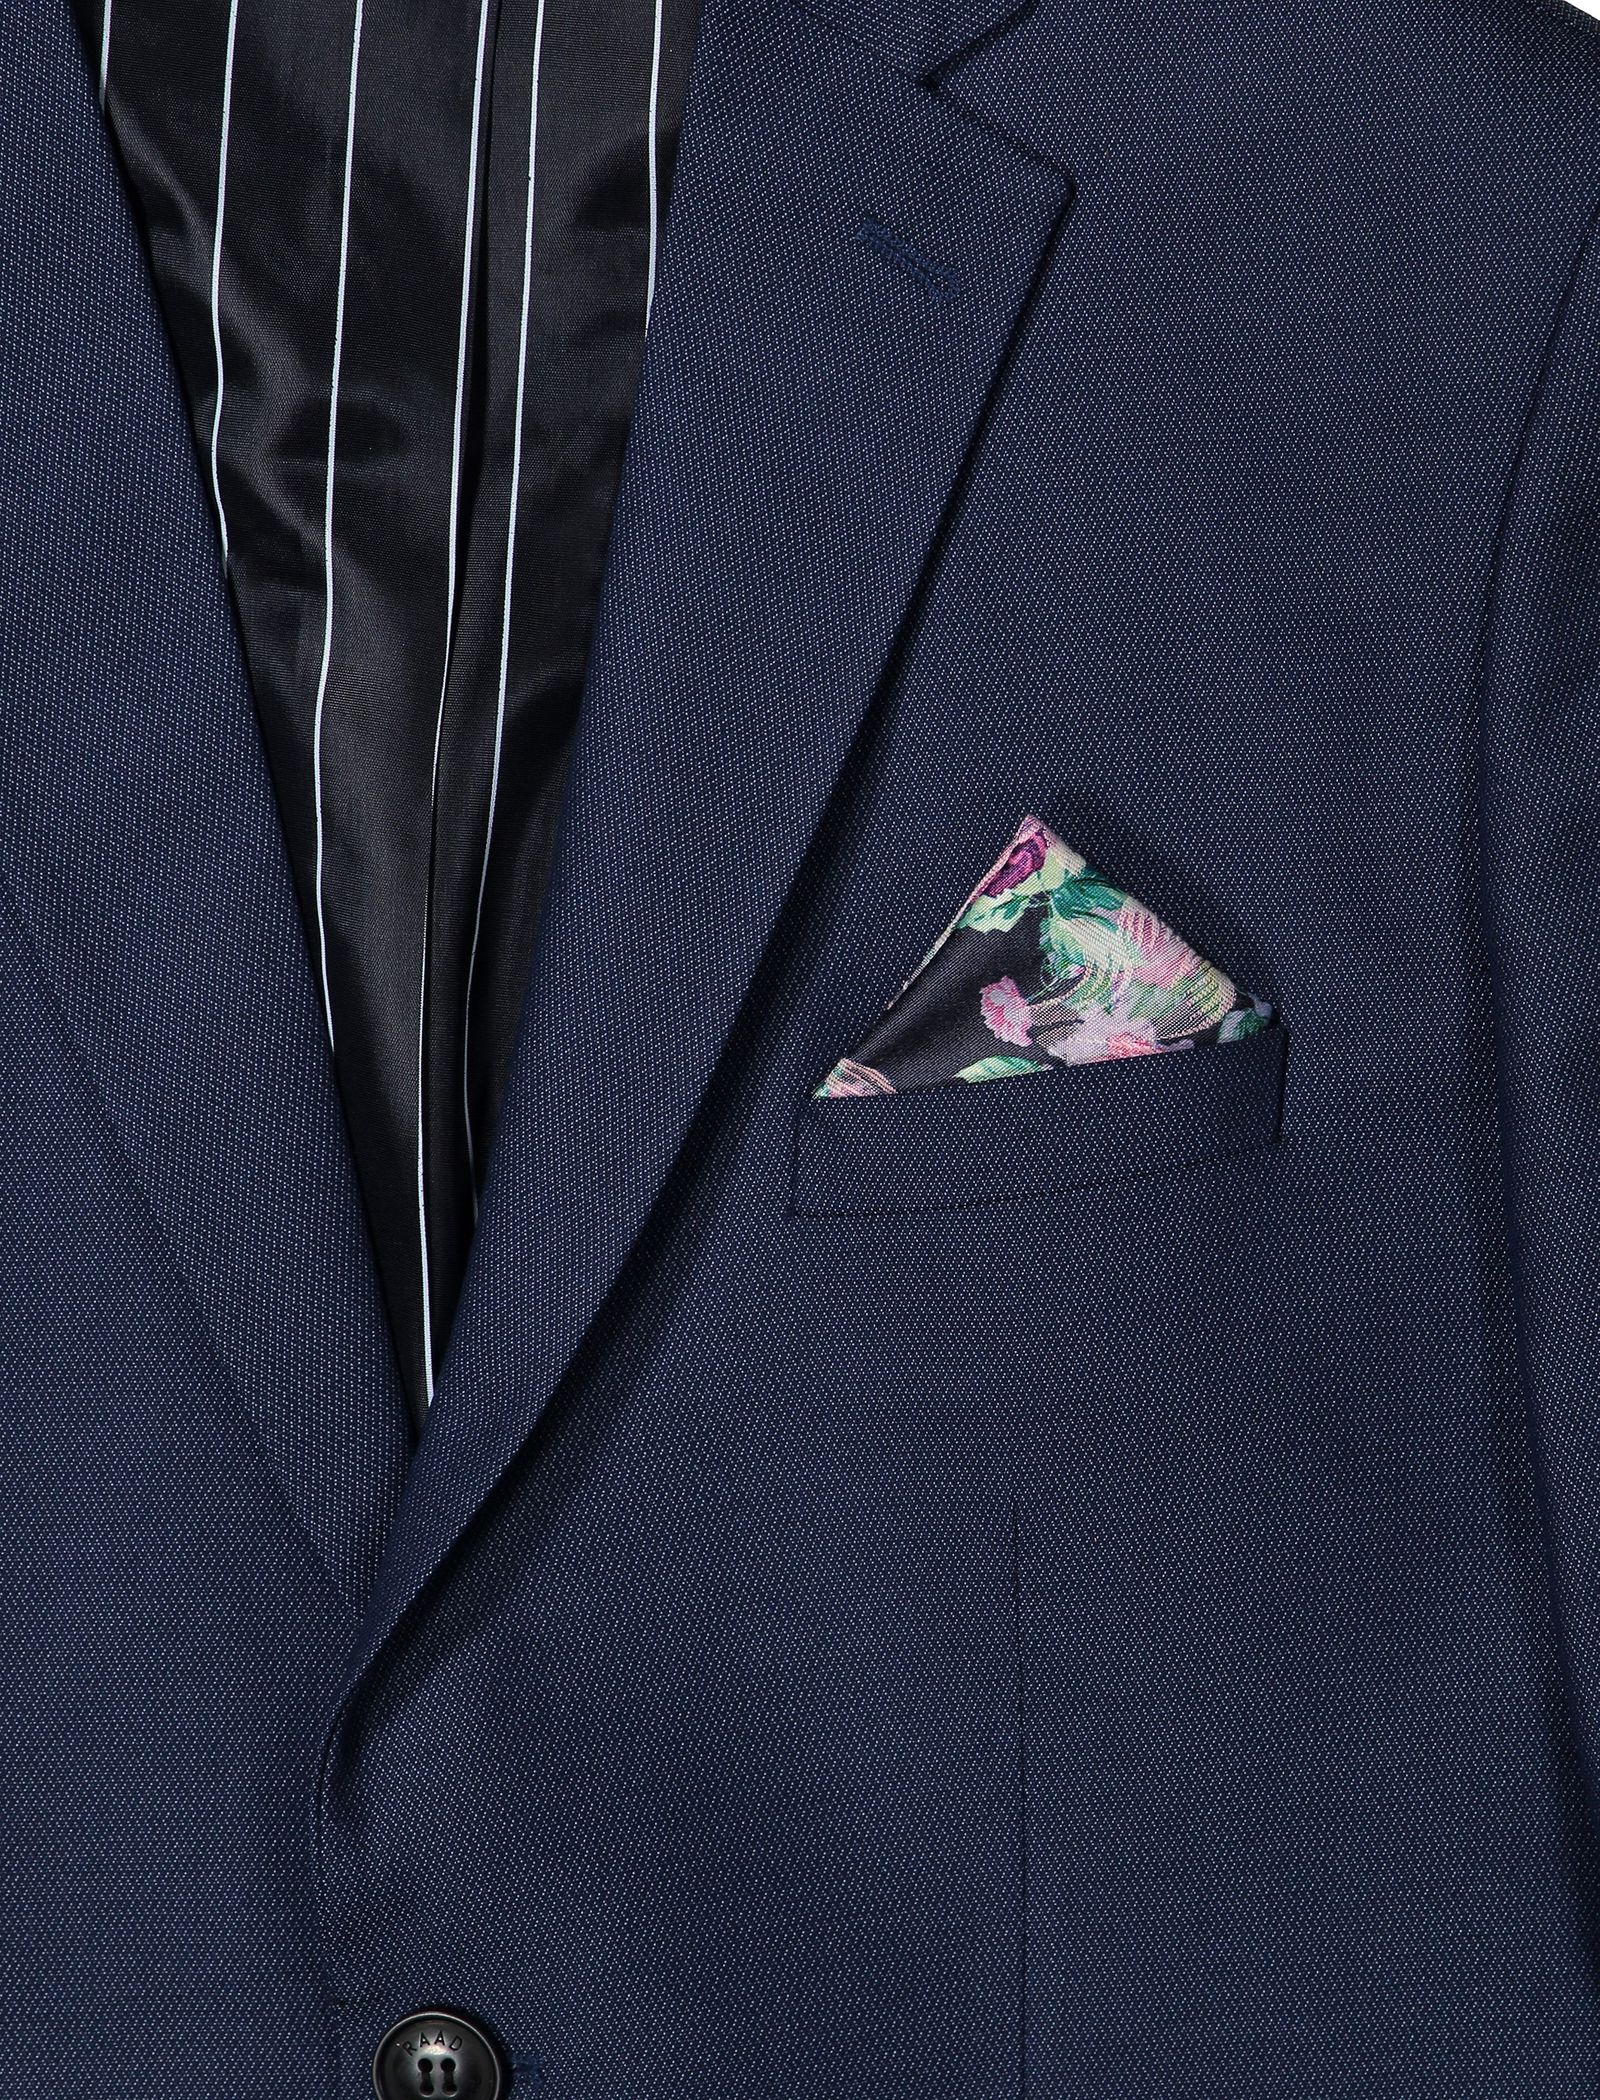 دستمال جیب طرح دار مردانه - خانه مد راد - چند رنگ - 8